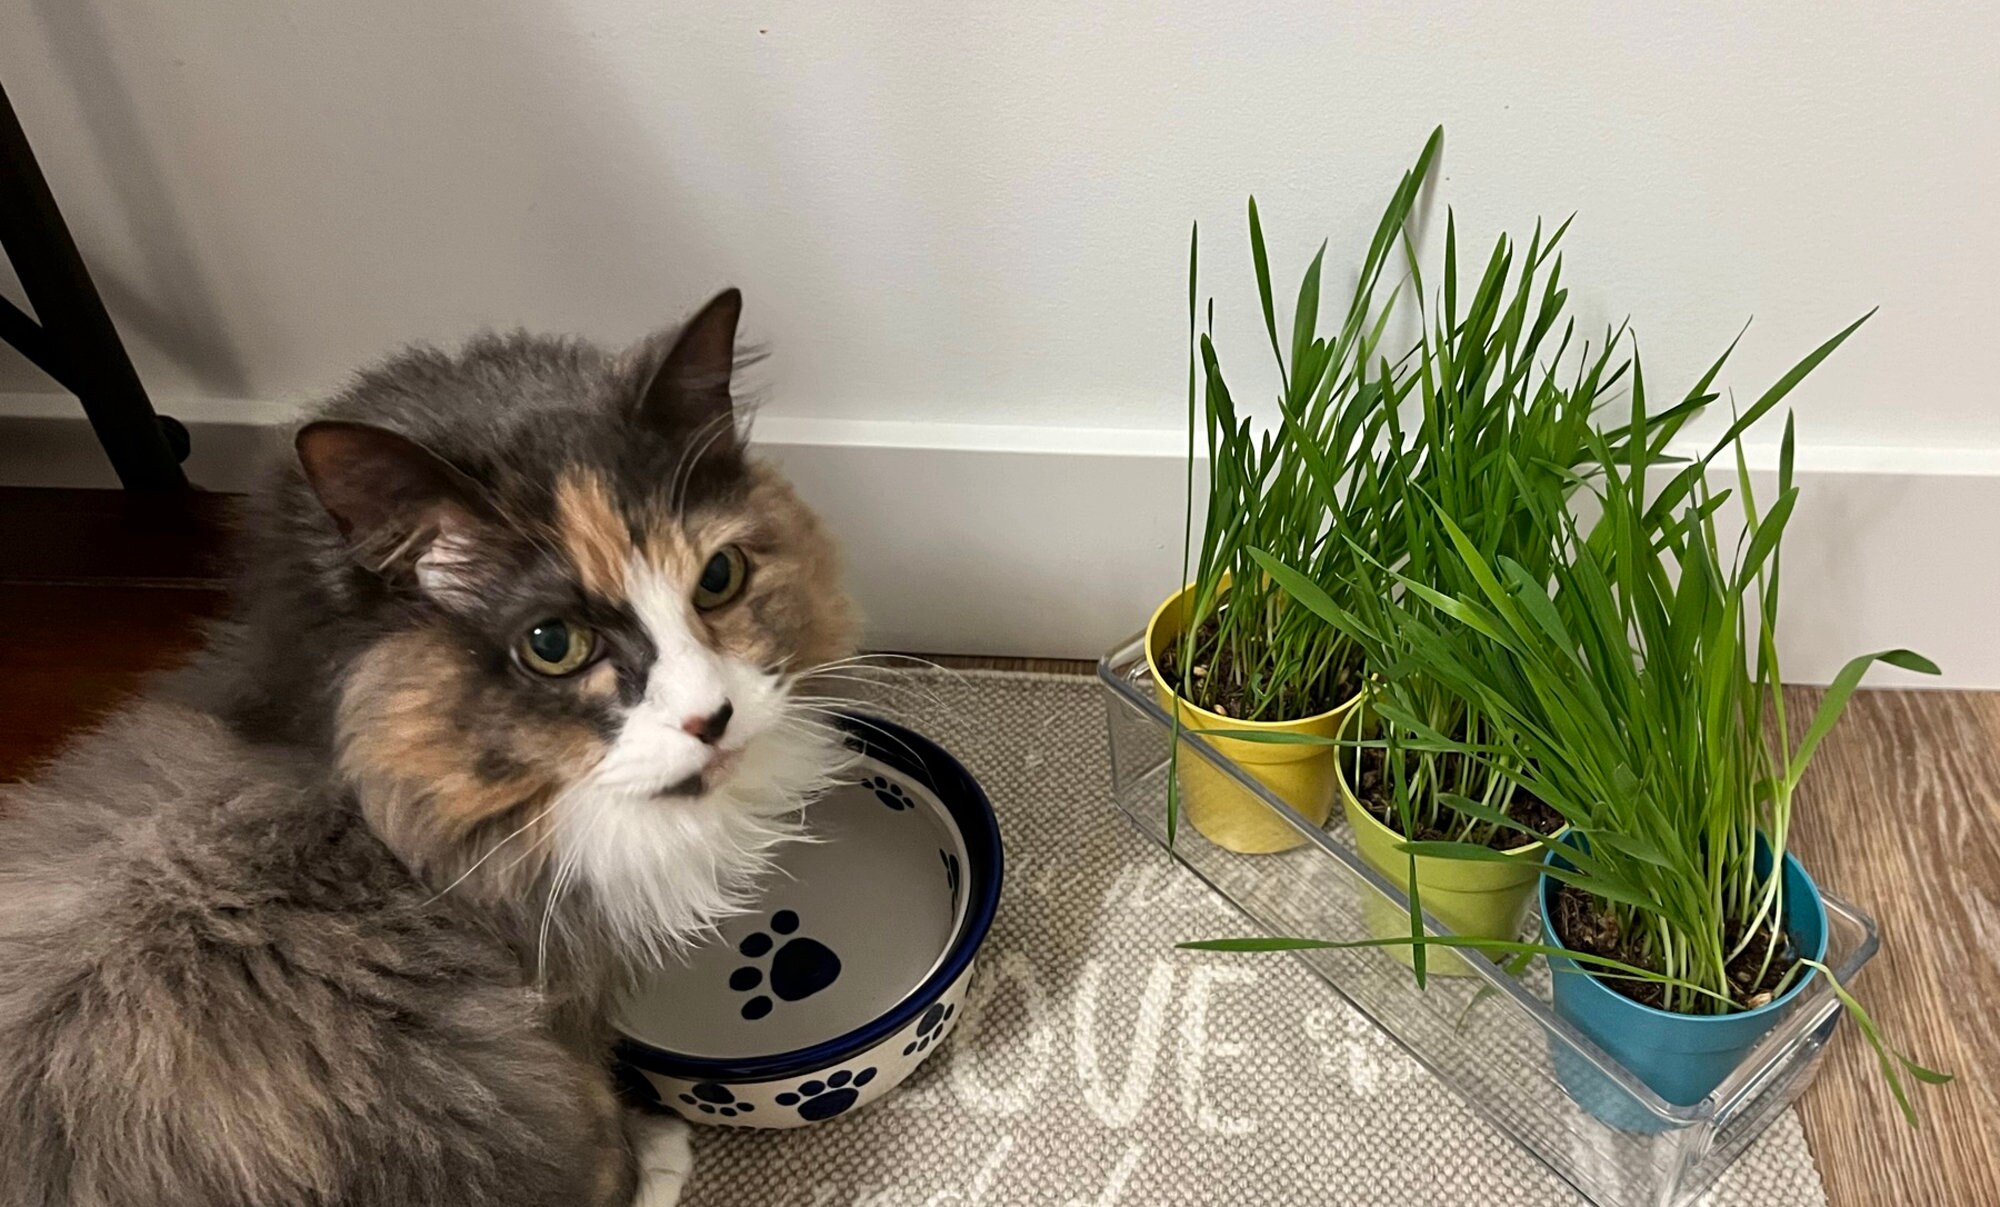 Catnip garden® herbe à chat naturelle en pot — Boutiques d'animaux